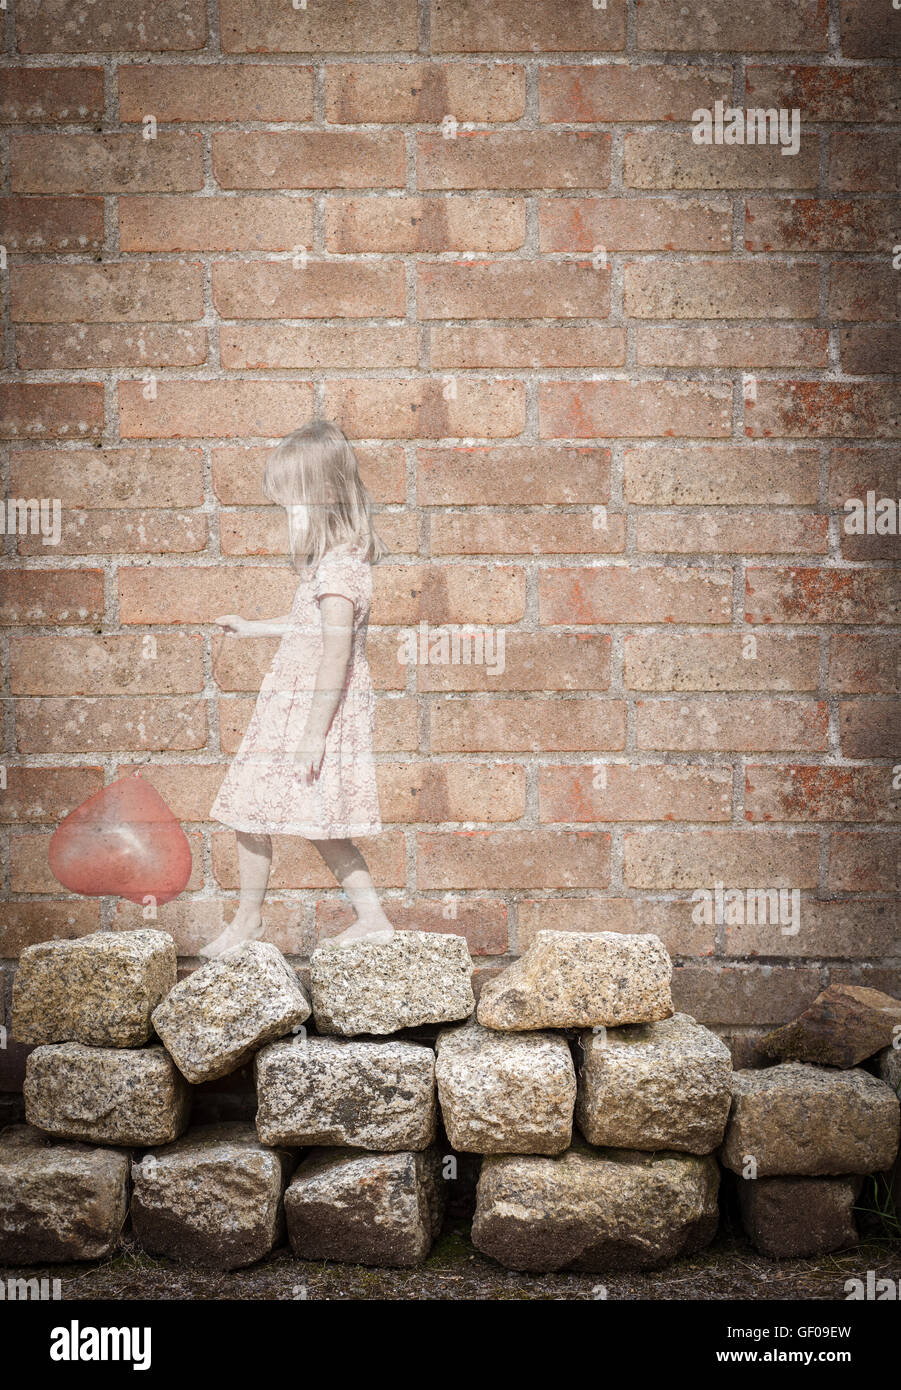 Hübsches kleines Mädchen mit roten Herzballon. Ätherisch undurchsichtig mit Grunge-Mauer. Liebe Kindheit Erinnerungen Einsamkeit Konzept Stockfoto